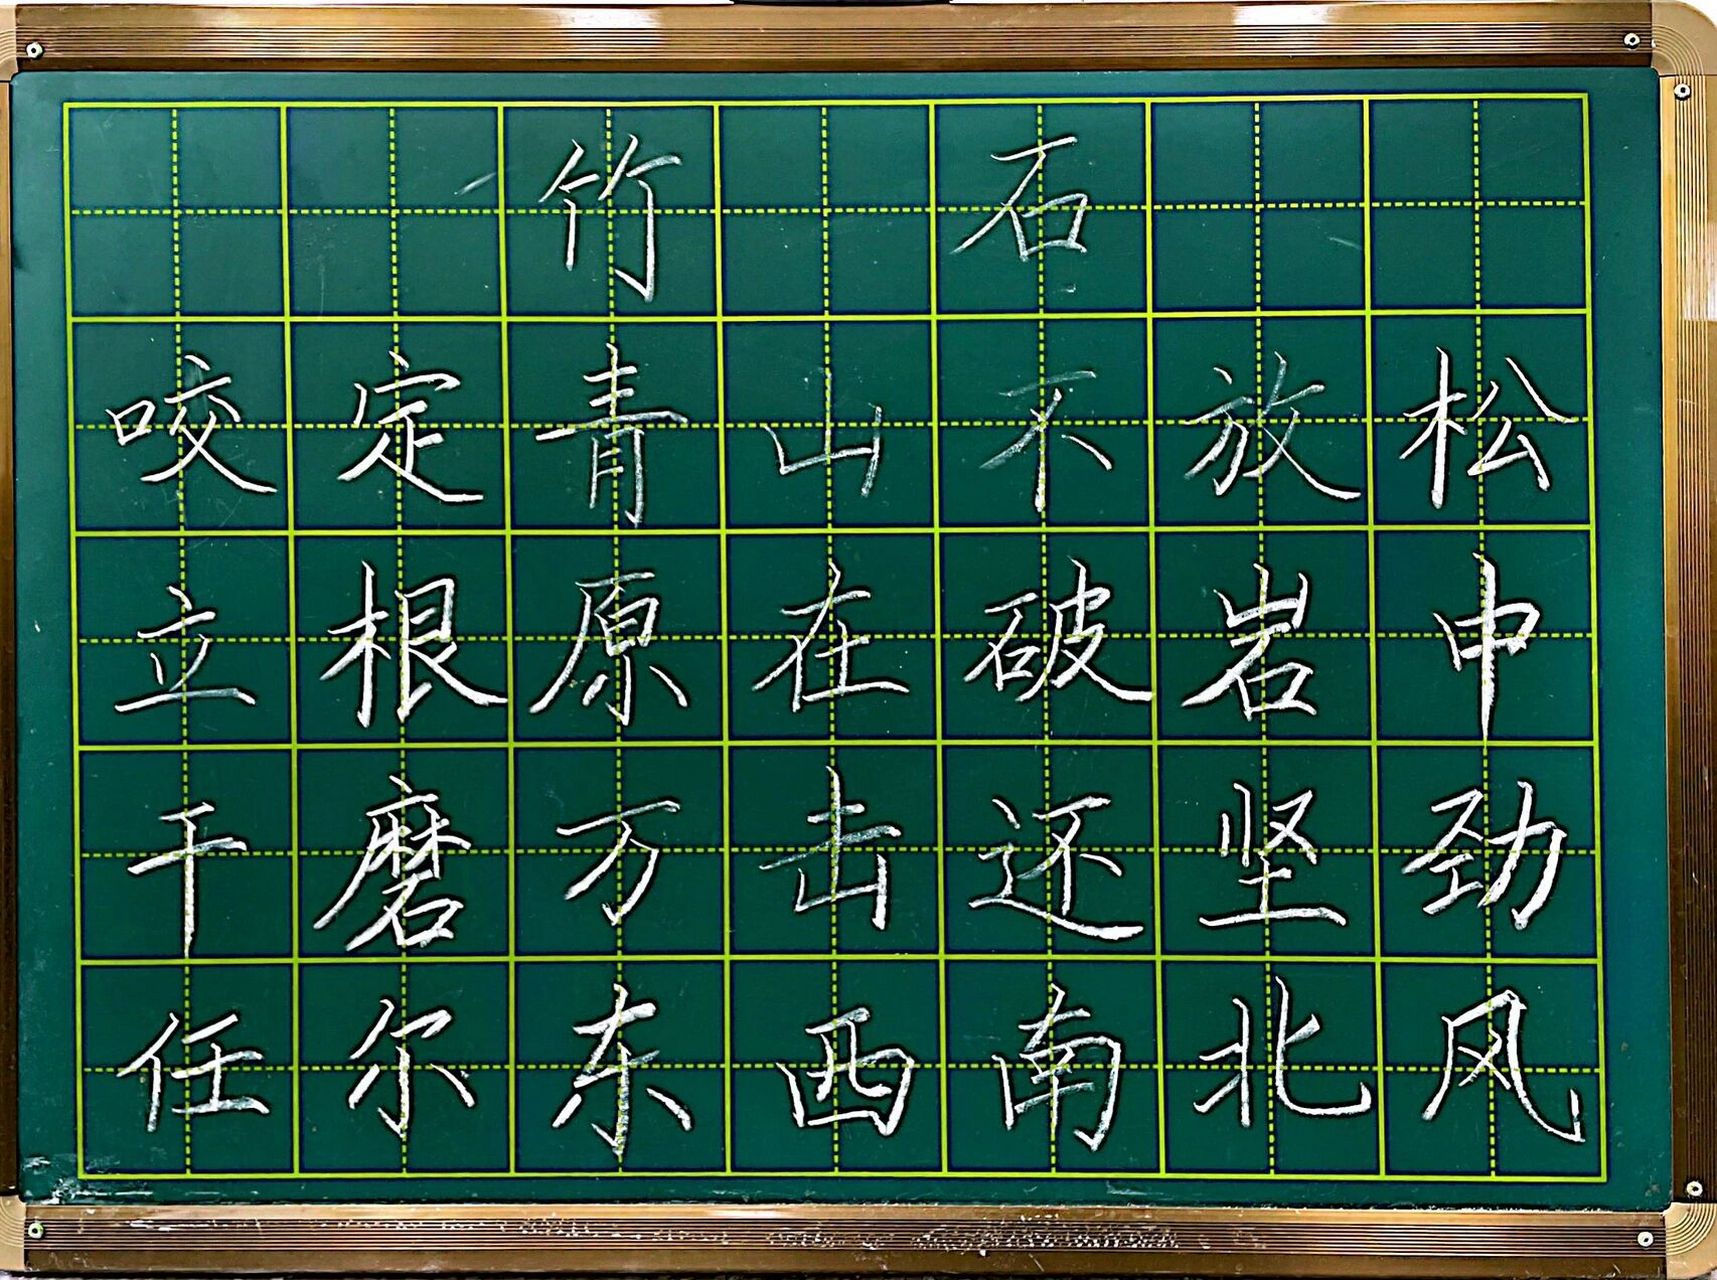 竹石黑板字图片